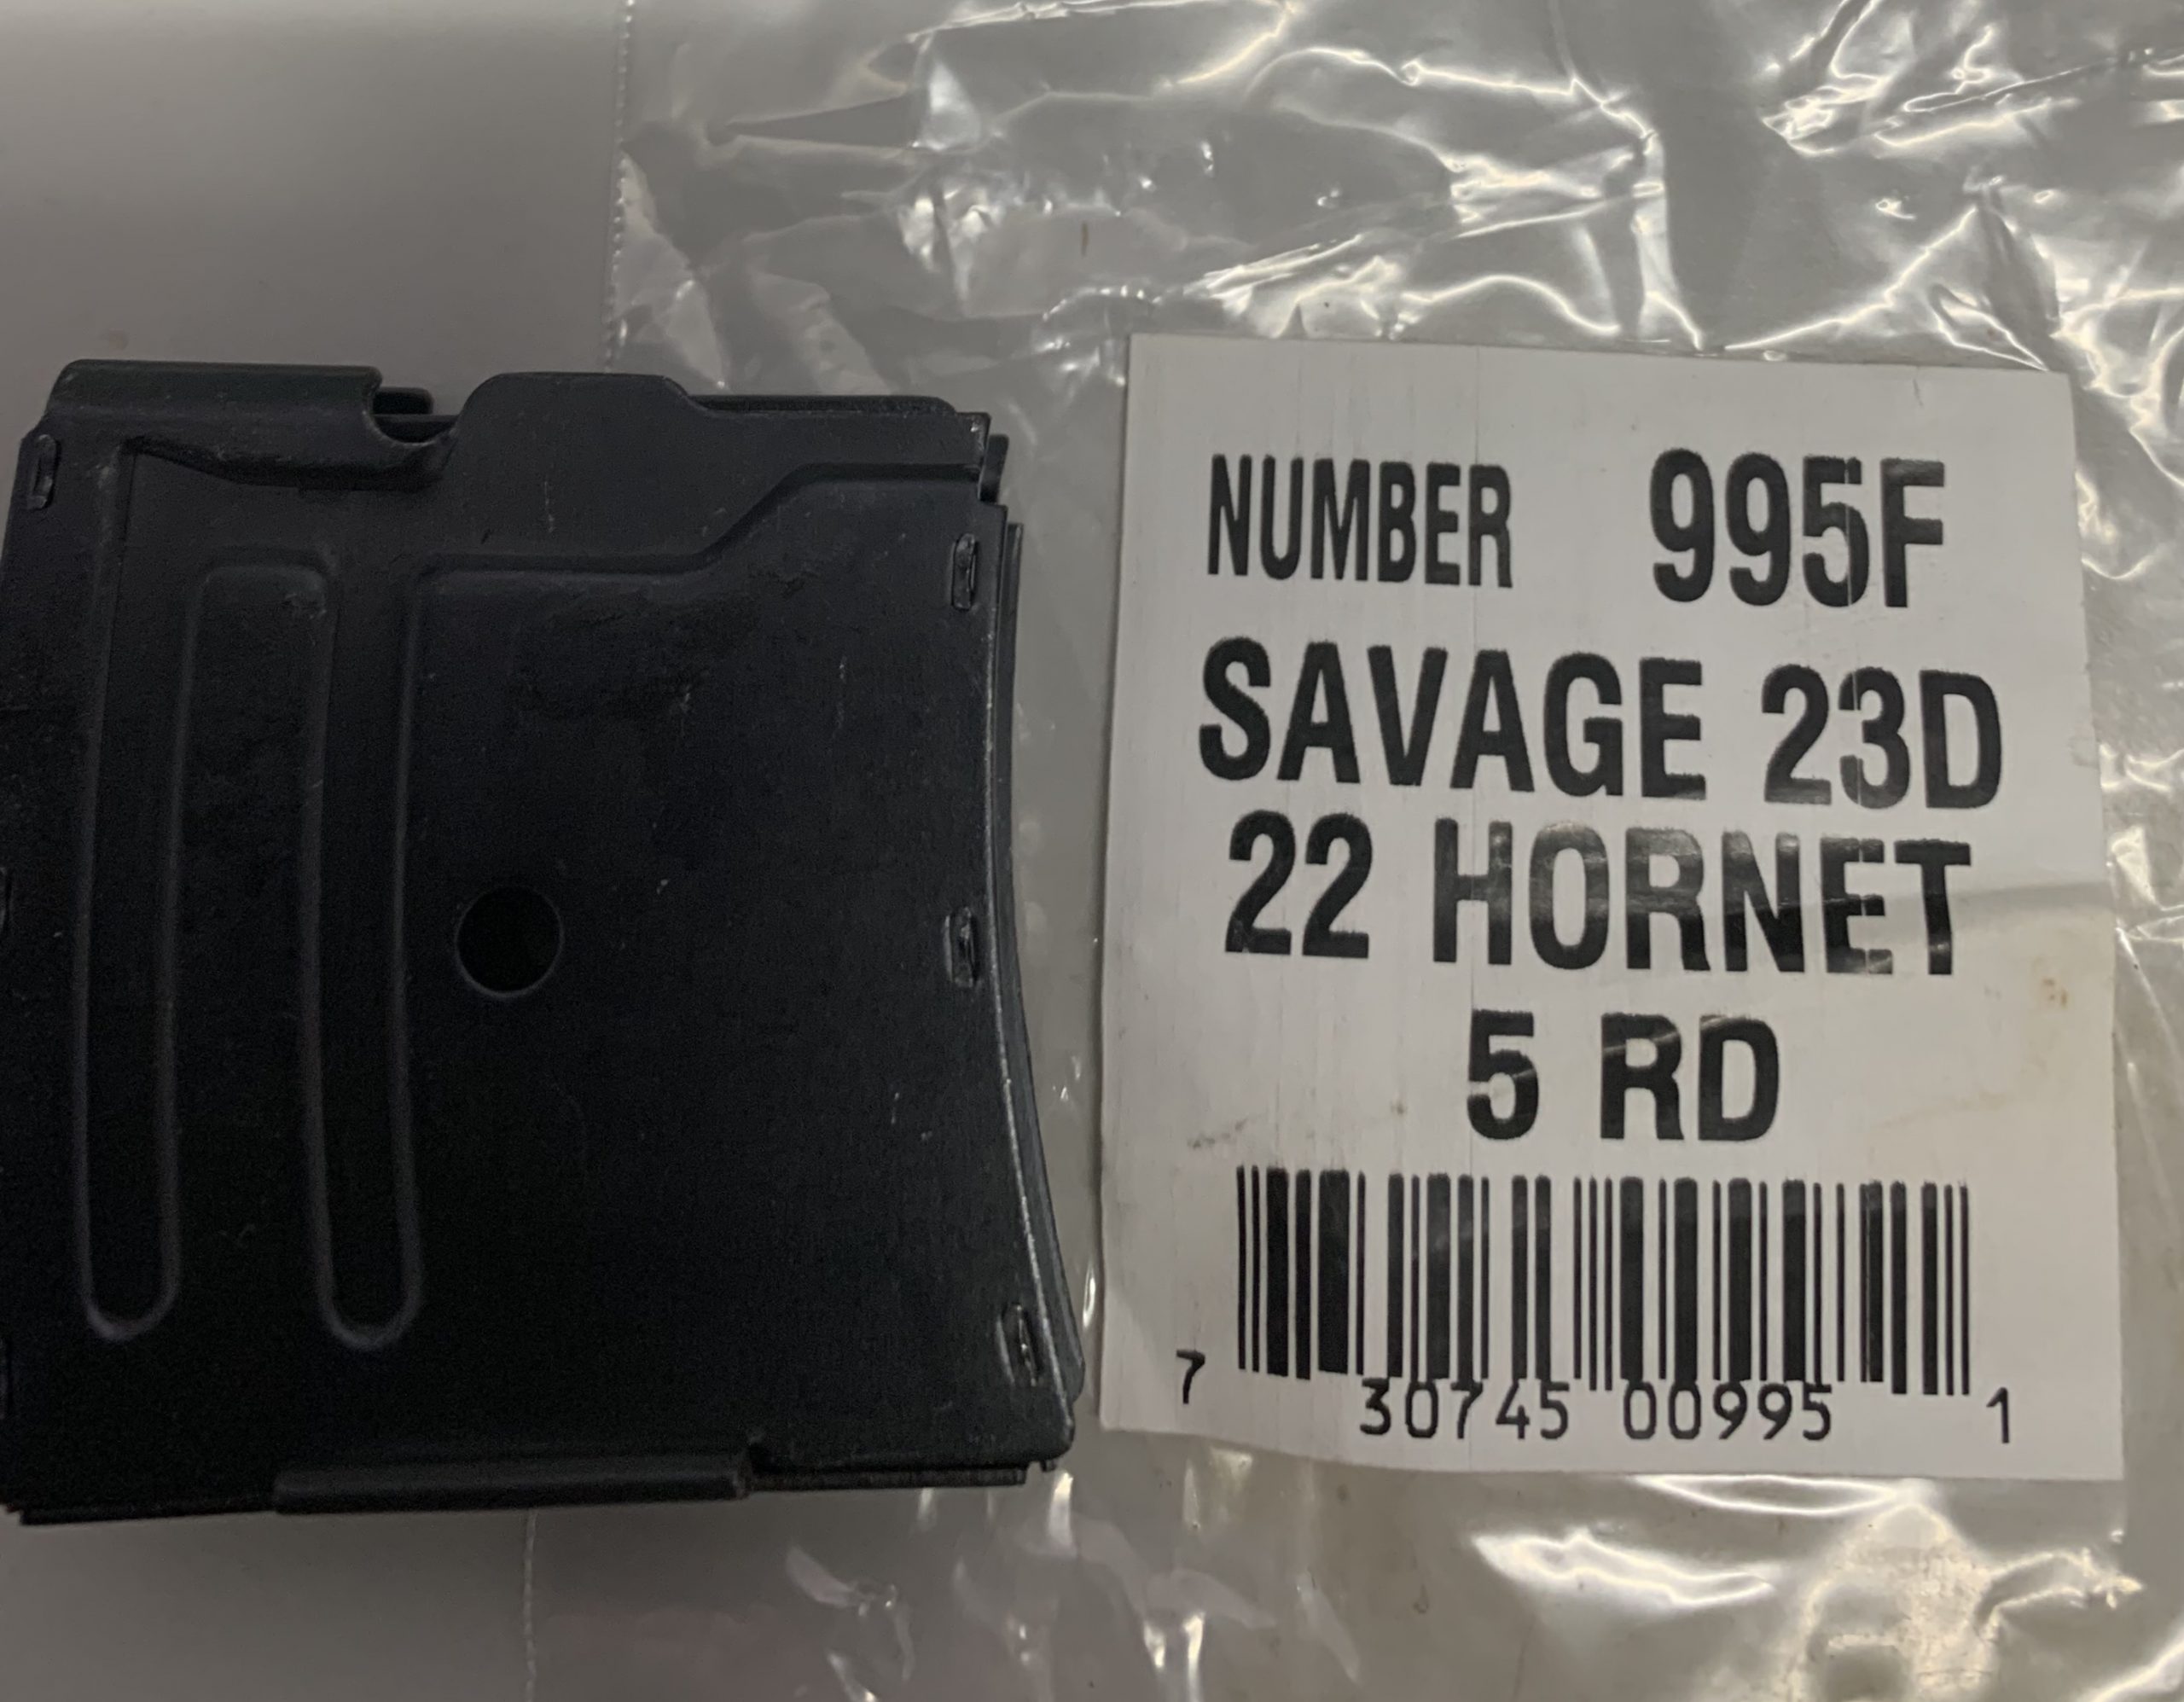 Savage 23D 22 hornet 5 round magazine 995F